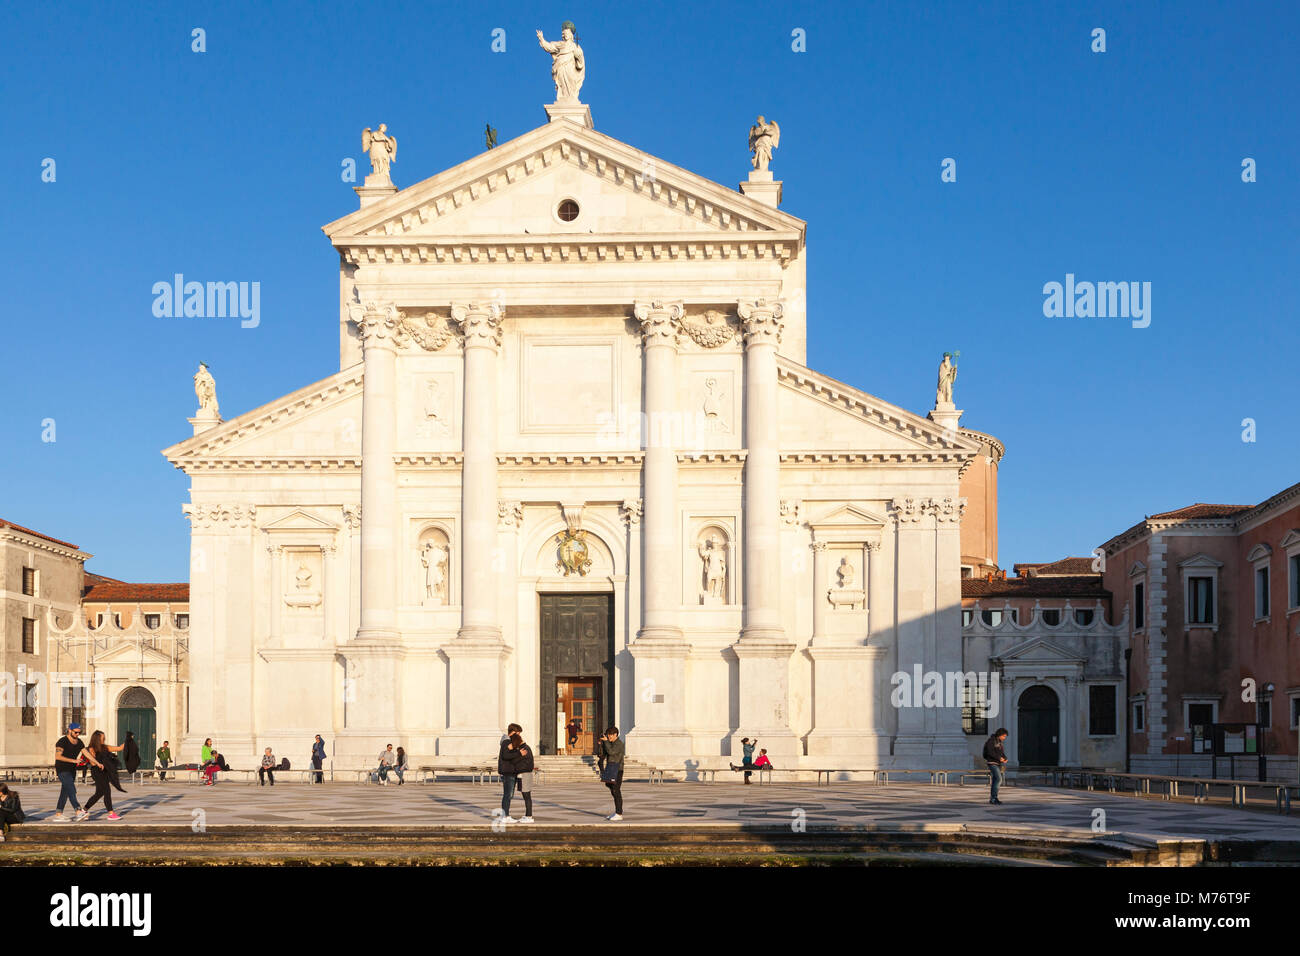 L'église San Giorgio Maggiore façade avant au coucher du soleil avec les touristes, Venise, Vénétie, Italie, Isola San Giorgio Maggiore, San Giorgio Maggiore island. Banque D'Images